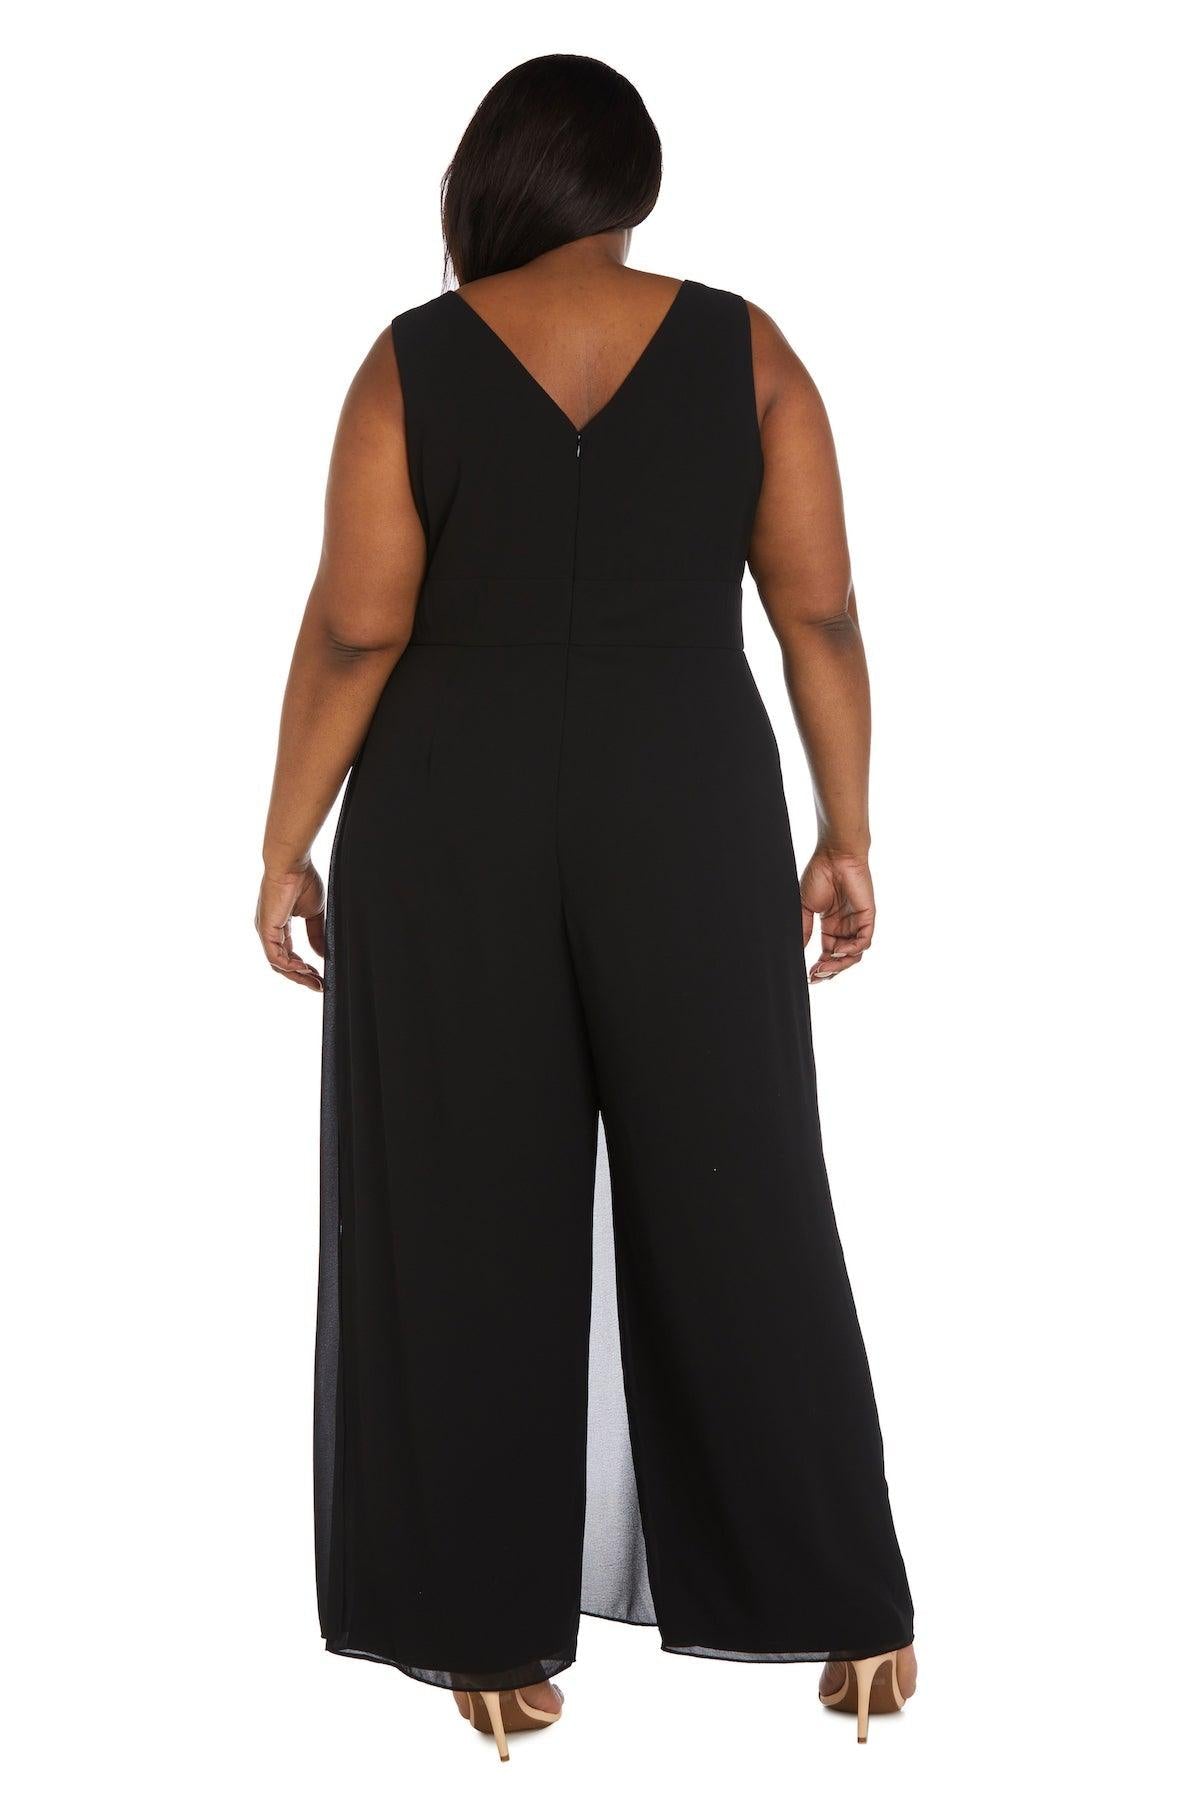 R&M Richards Long Formal Plus Size Jumpsuit 9365W - The Dress Outlet